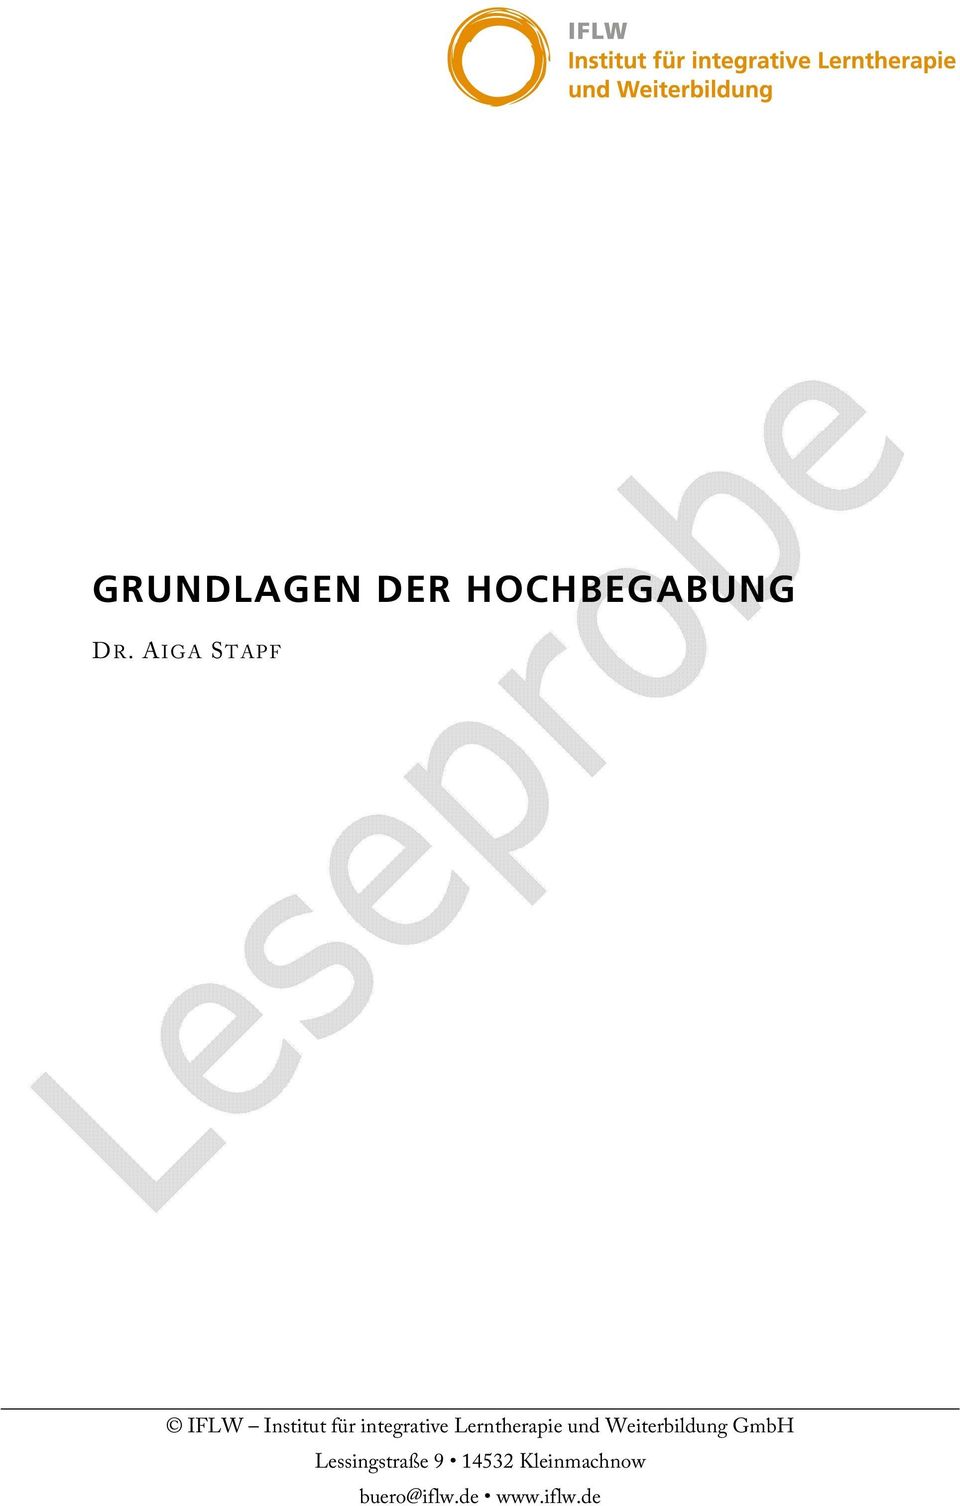 Lerntherapie und Weiterbildung GmbH